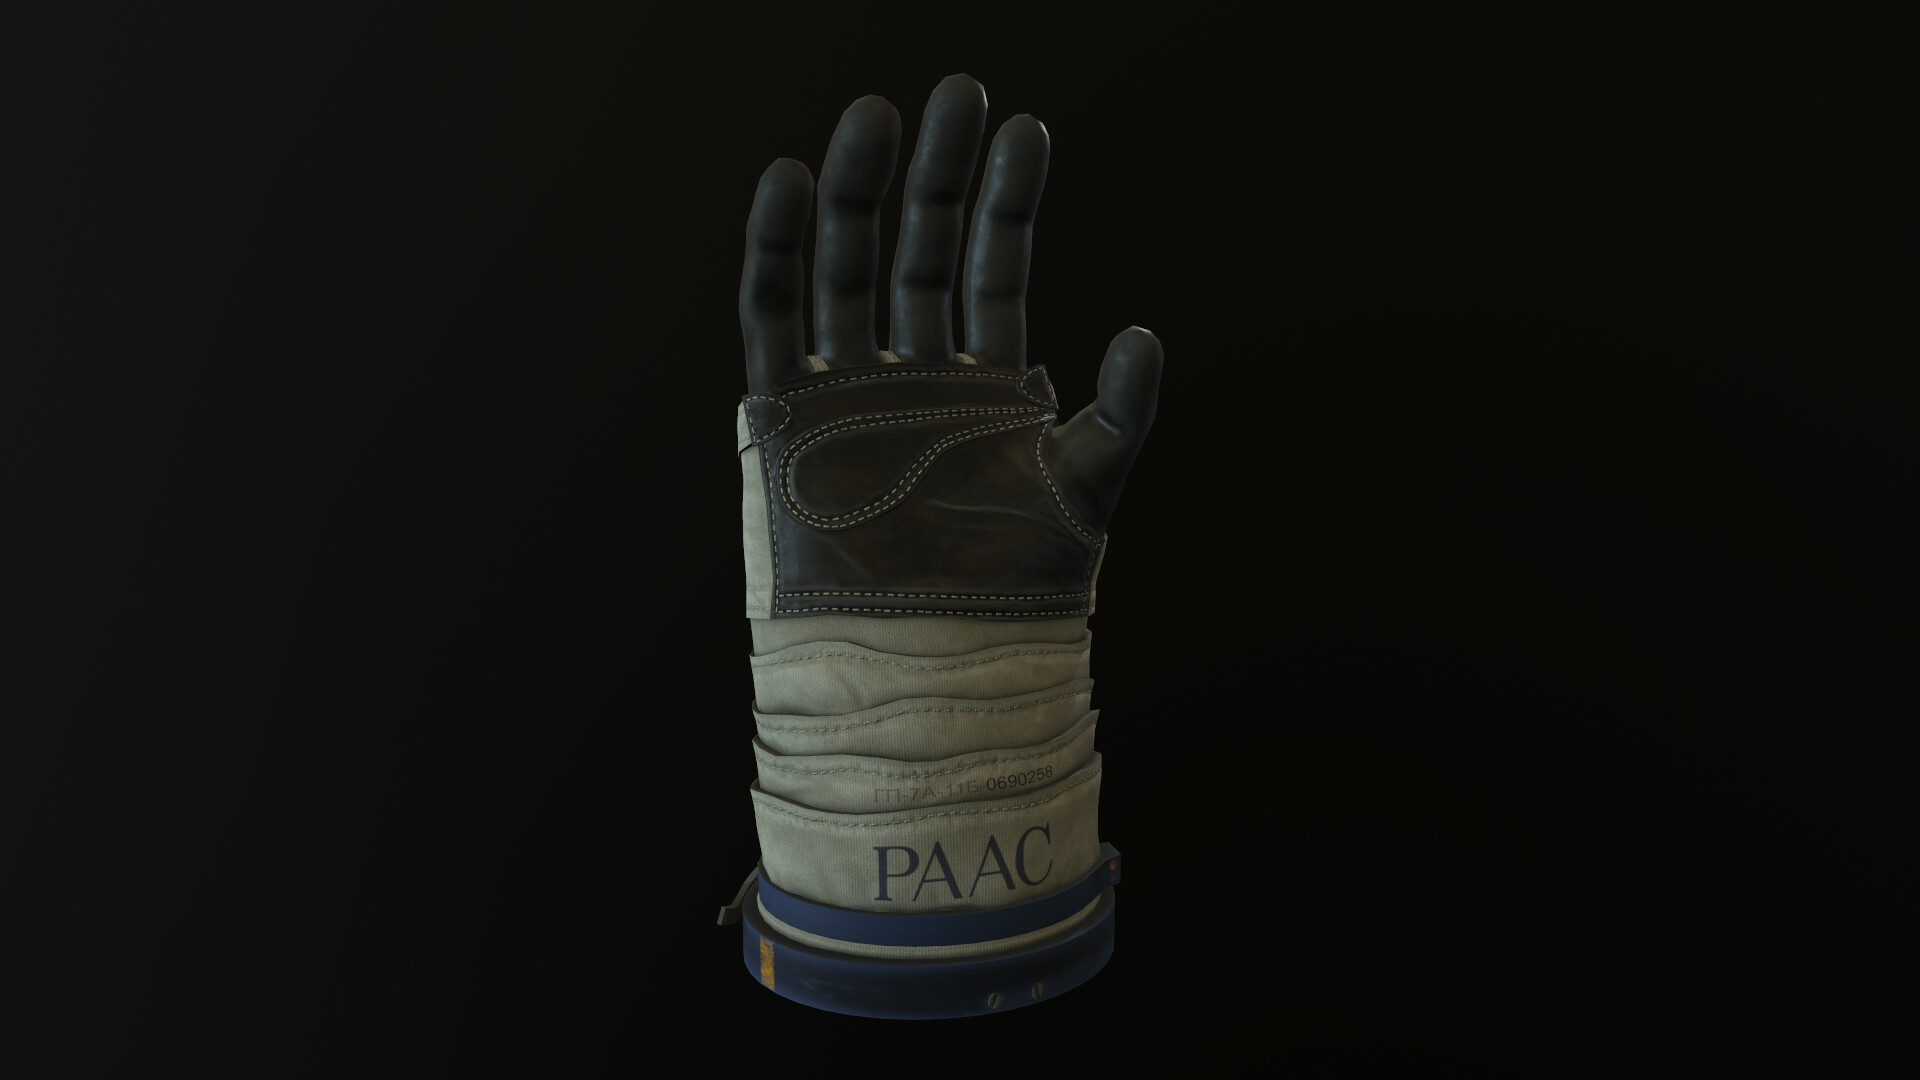 ArtStation - Cosmonaut space suit glove